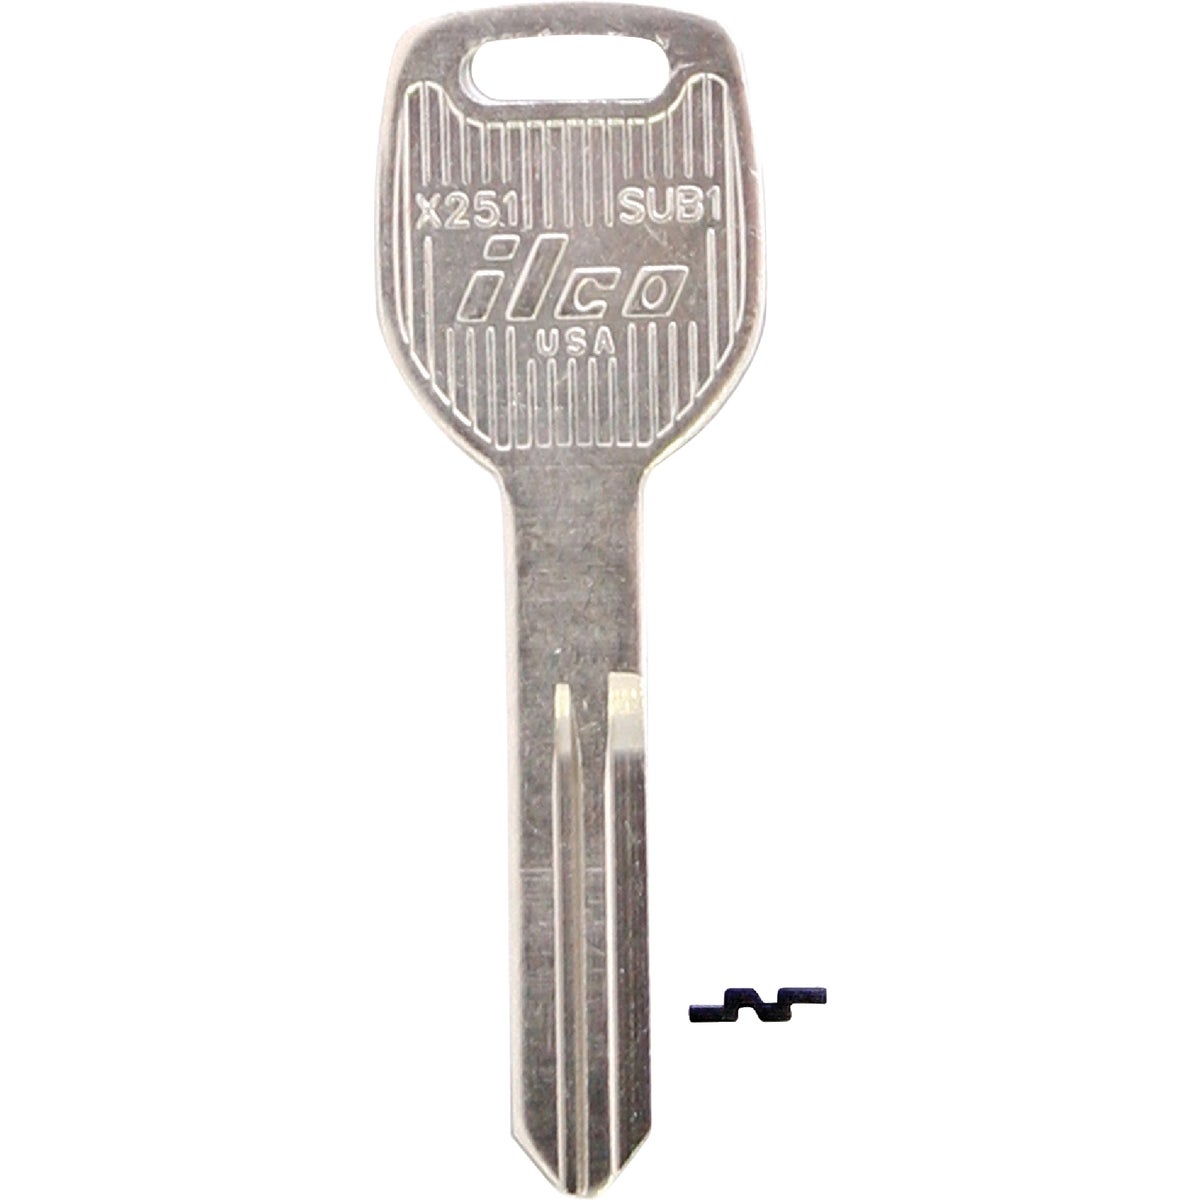 ILCO Subaru Nickel Plated Automotive Key, SUB1 / X251 (10-Pack)